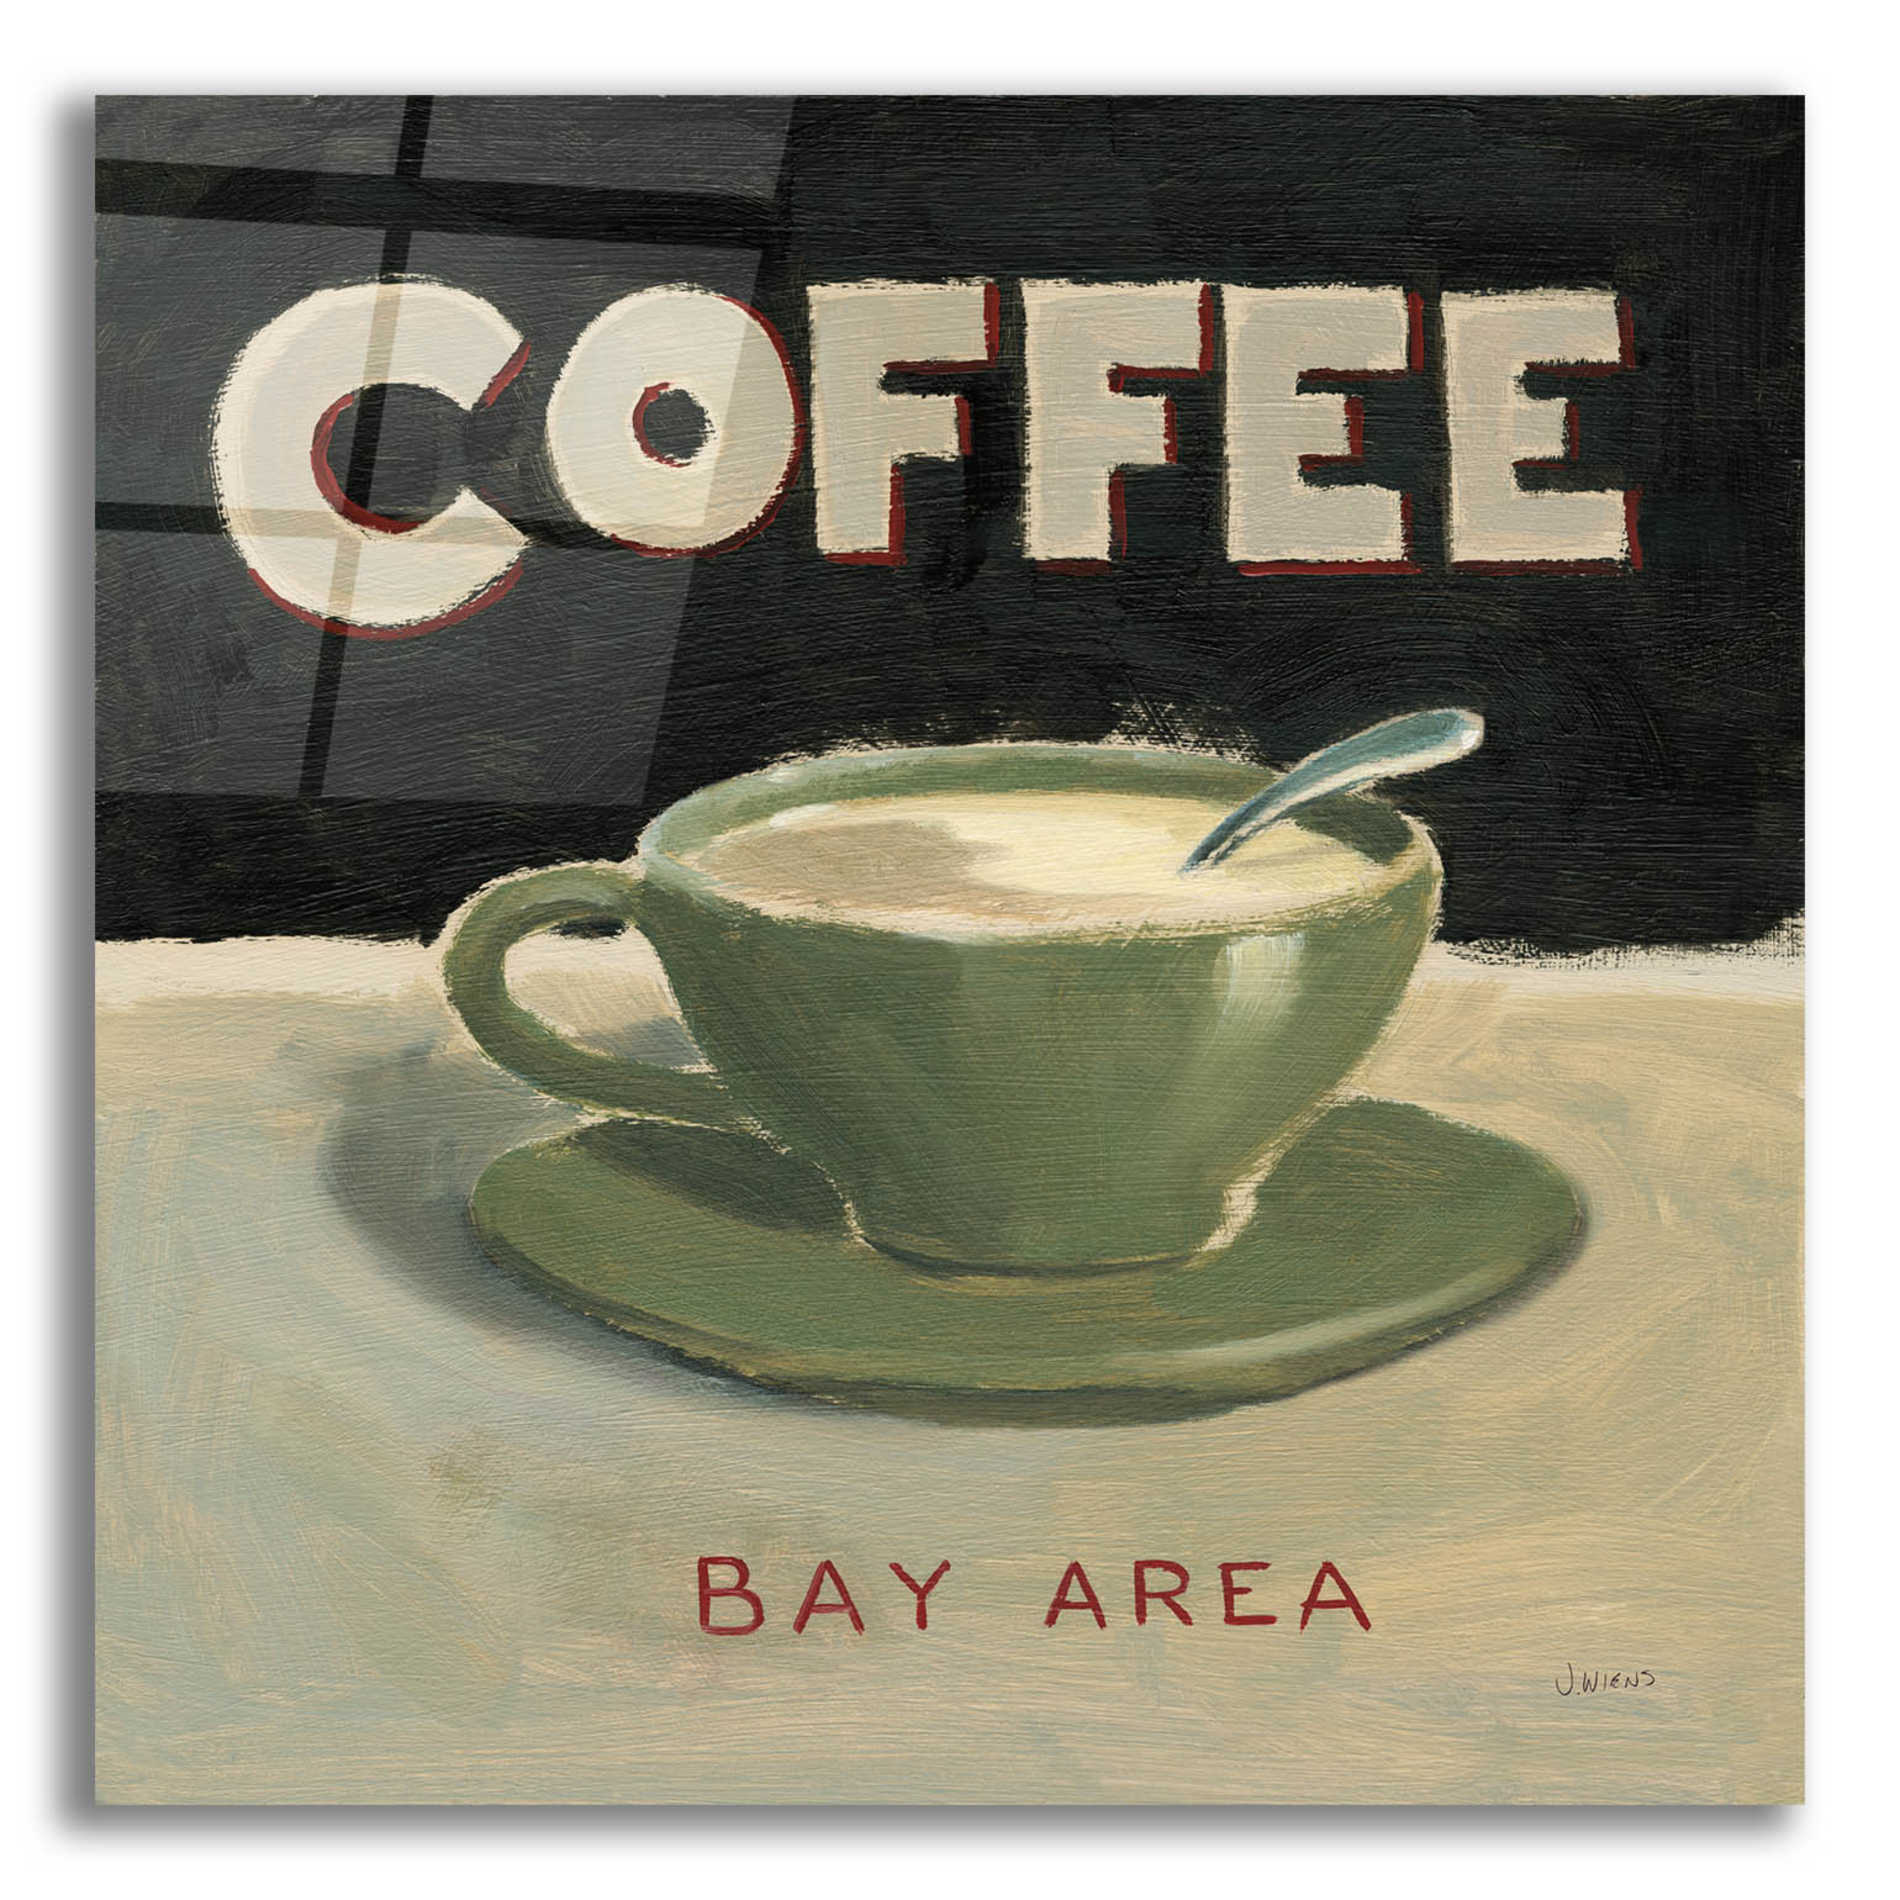 Epic Art 'Coffee Spot III' by James Wiens, Acrylic Glass Wall Art,12x12x1.1x0,18x18x1.1x0,26x26x1.74x0,37x37x1.74x0